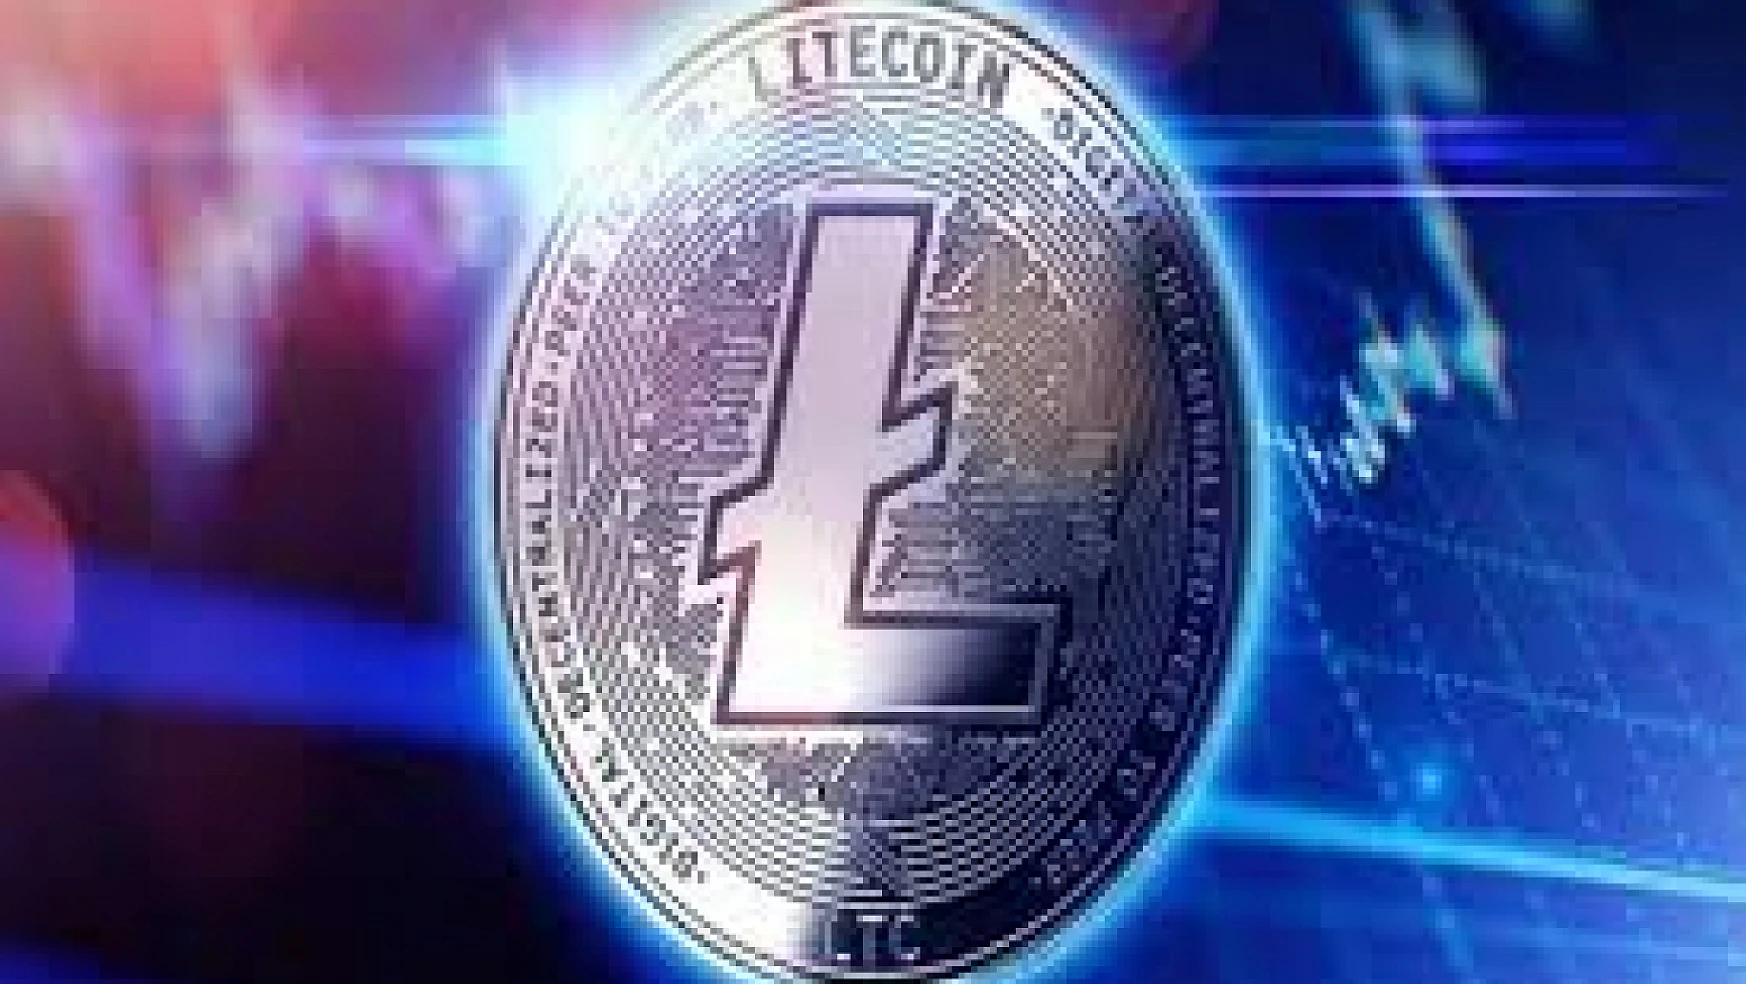 Litecoin nedir? Litecoin'in Bitcoin'den farkları ve avantajları nelerdir?